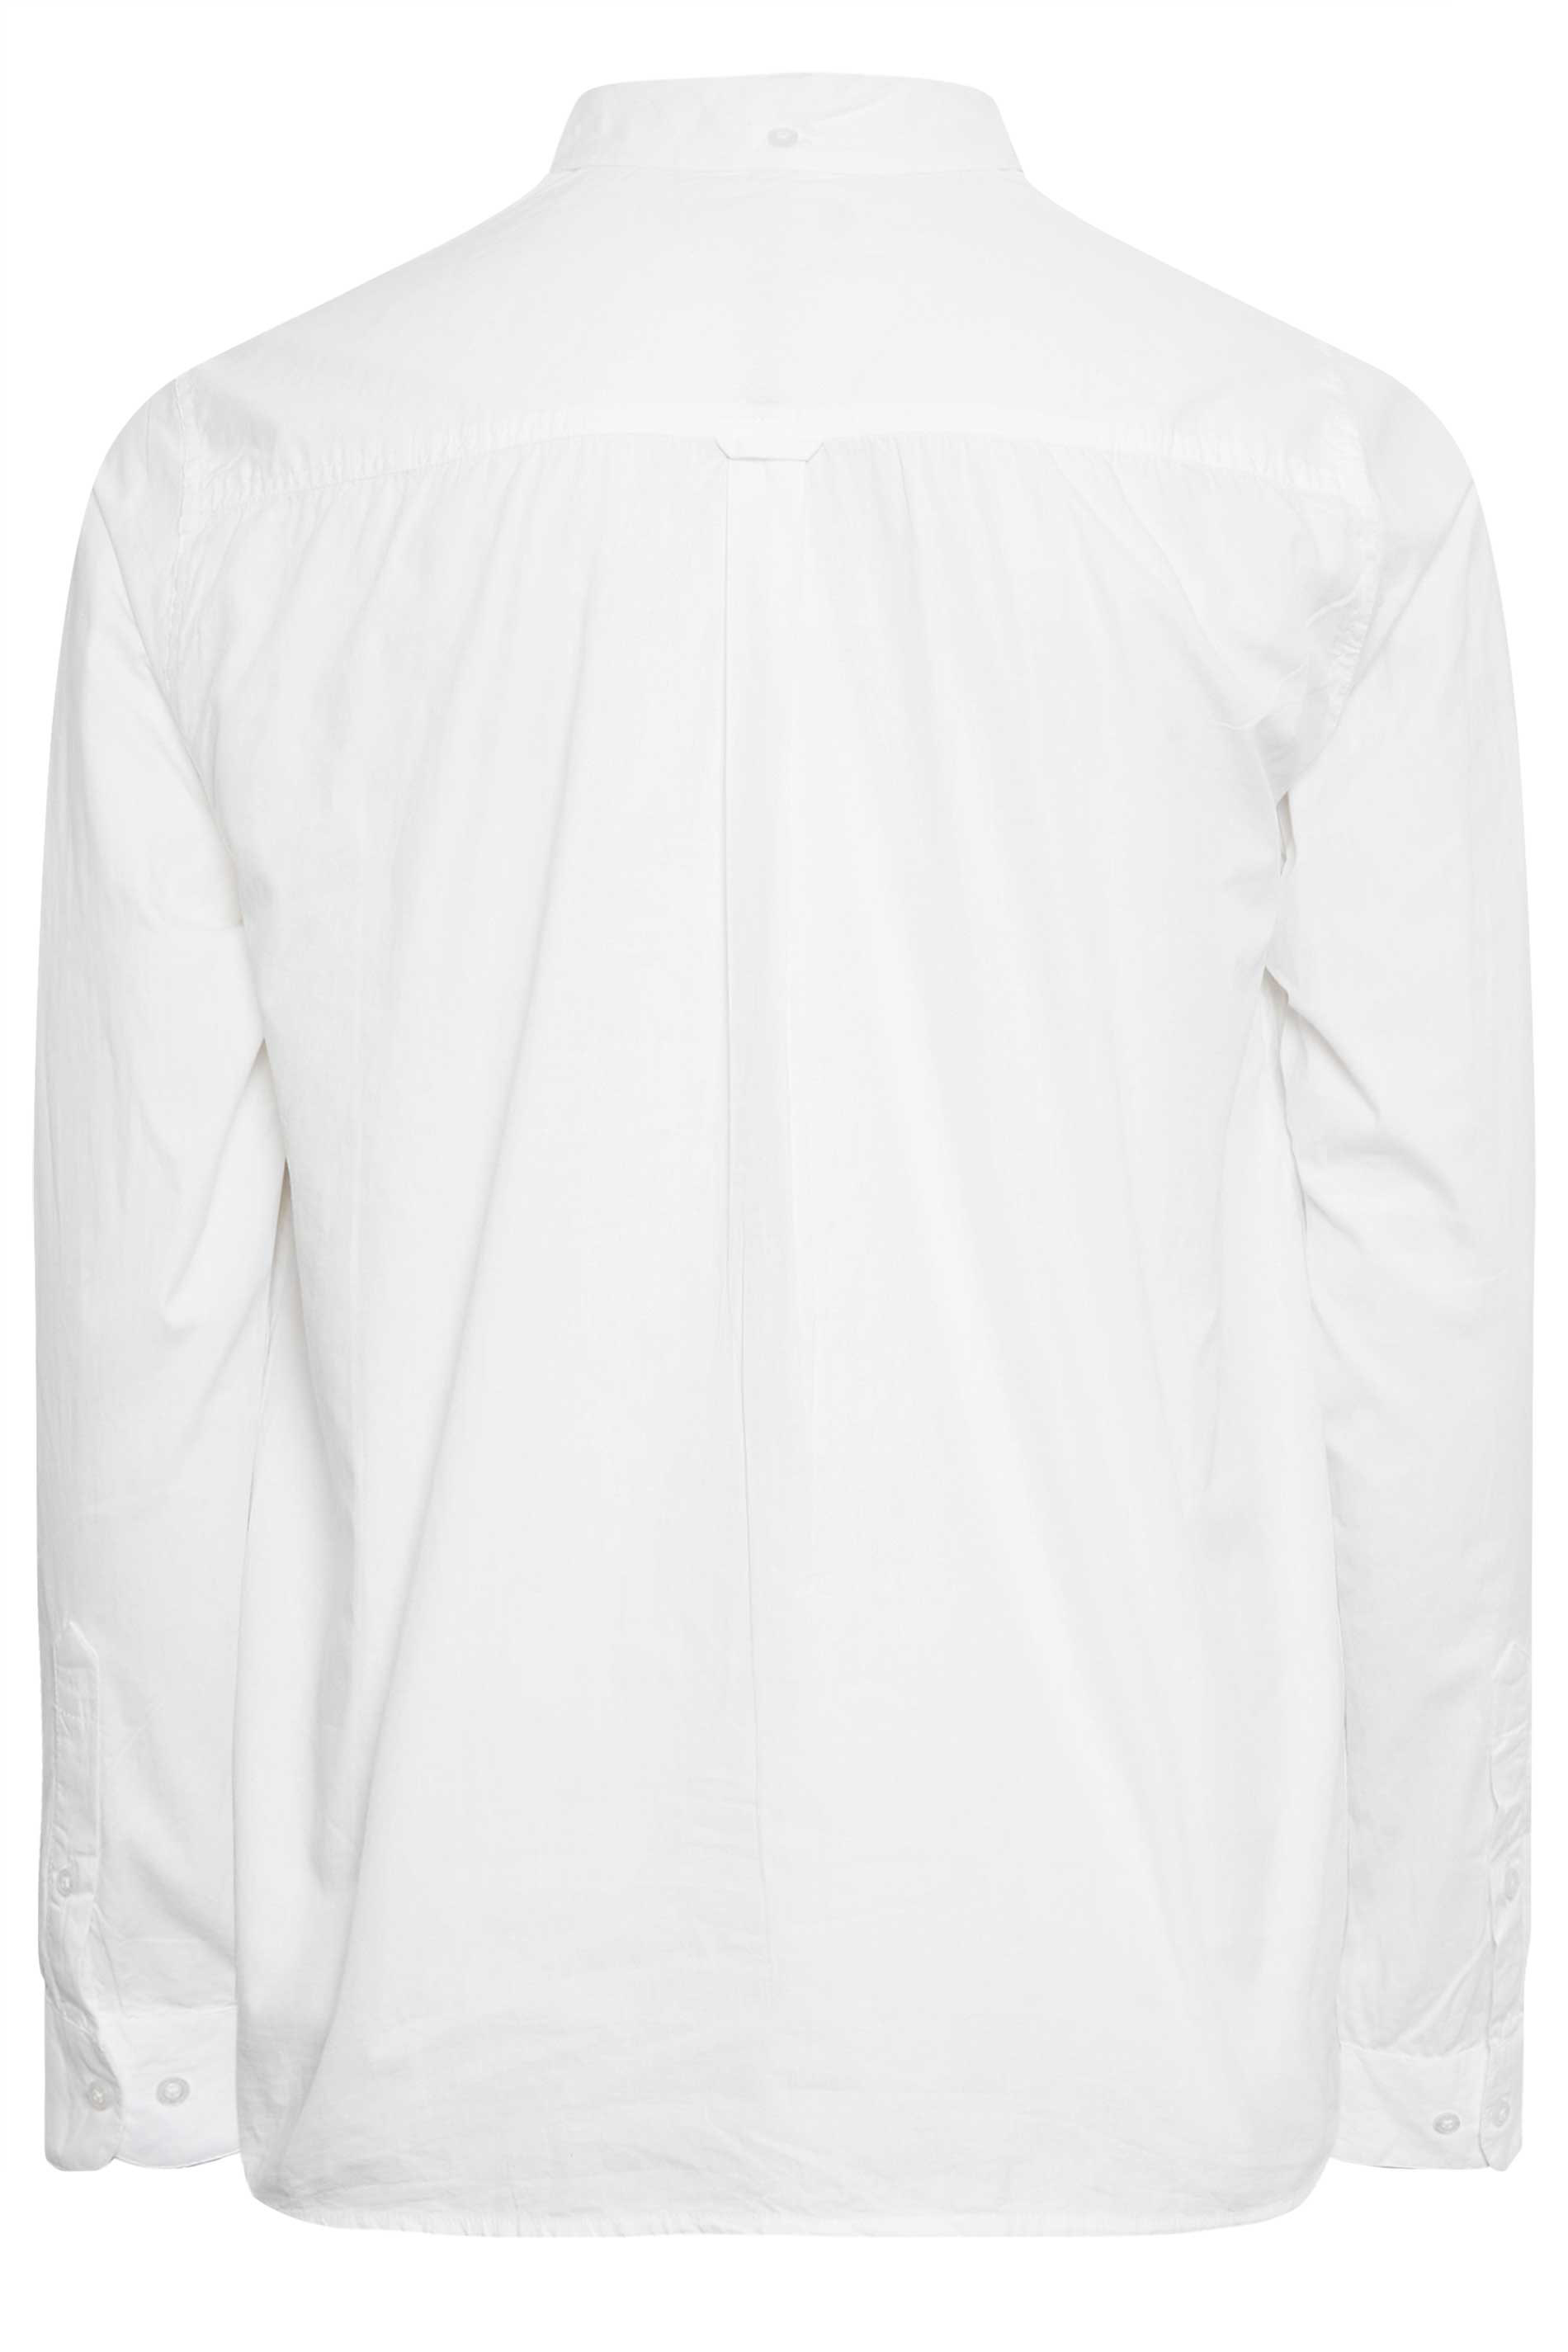 BadRhino Big & Tall White Poplin Shirt | BadRhino 3